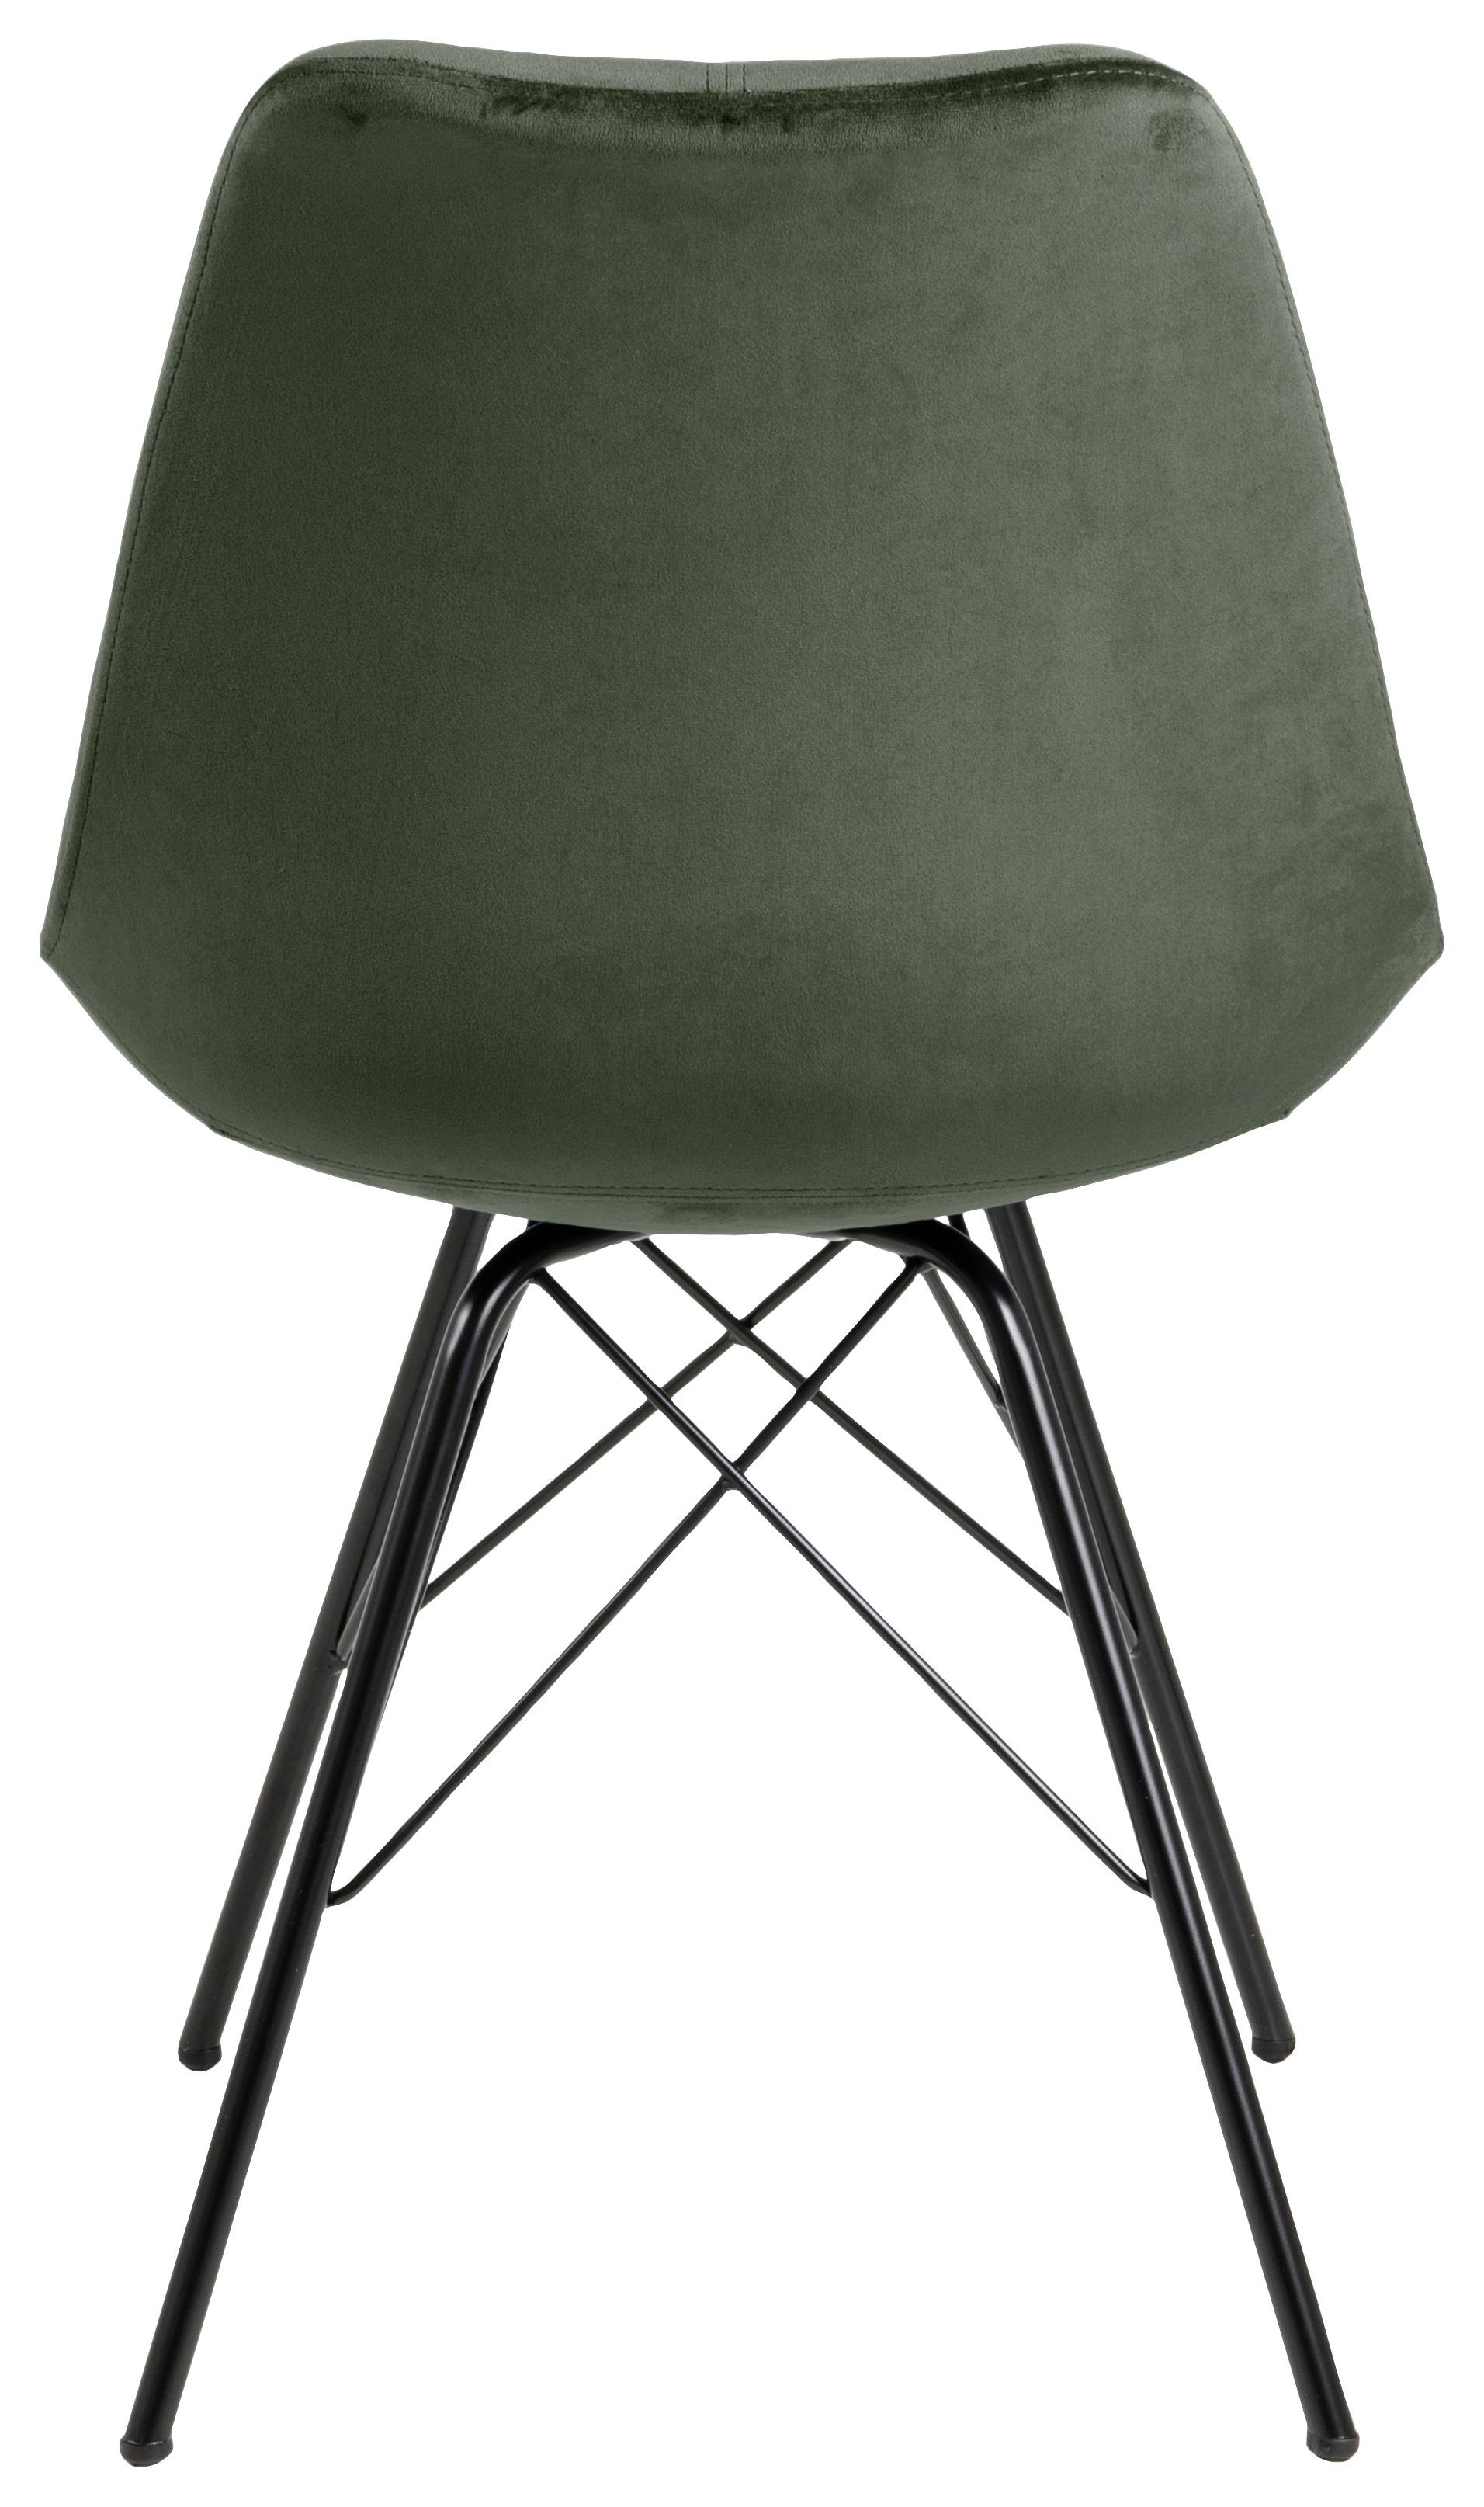 Jídelní Židle Eris Tmavě Zelená - černá/lesní zelená, Trend, kov/textil (48,5/85,5/54cm) - Carryhome